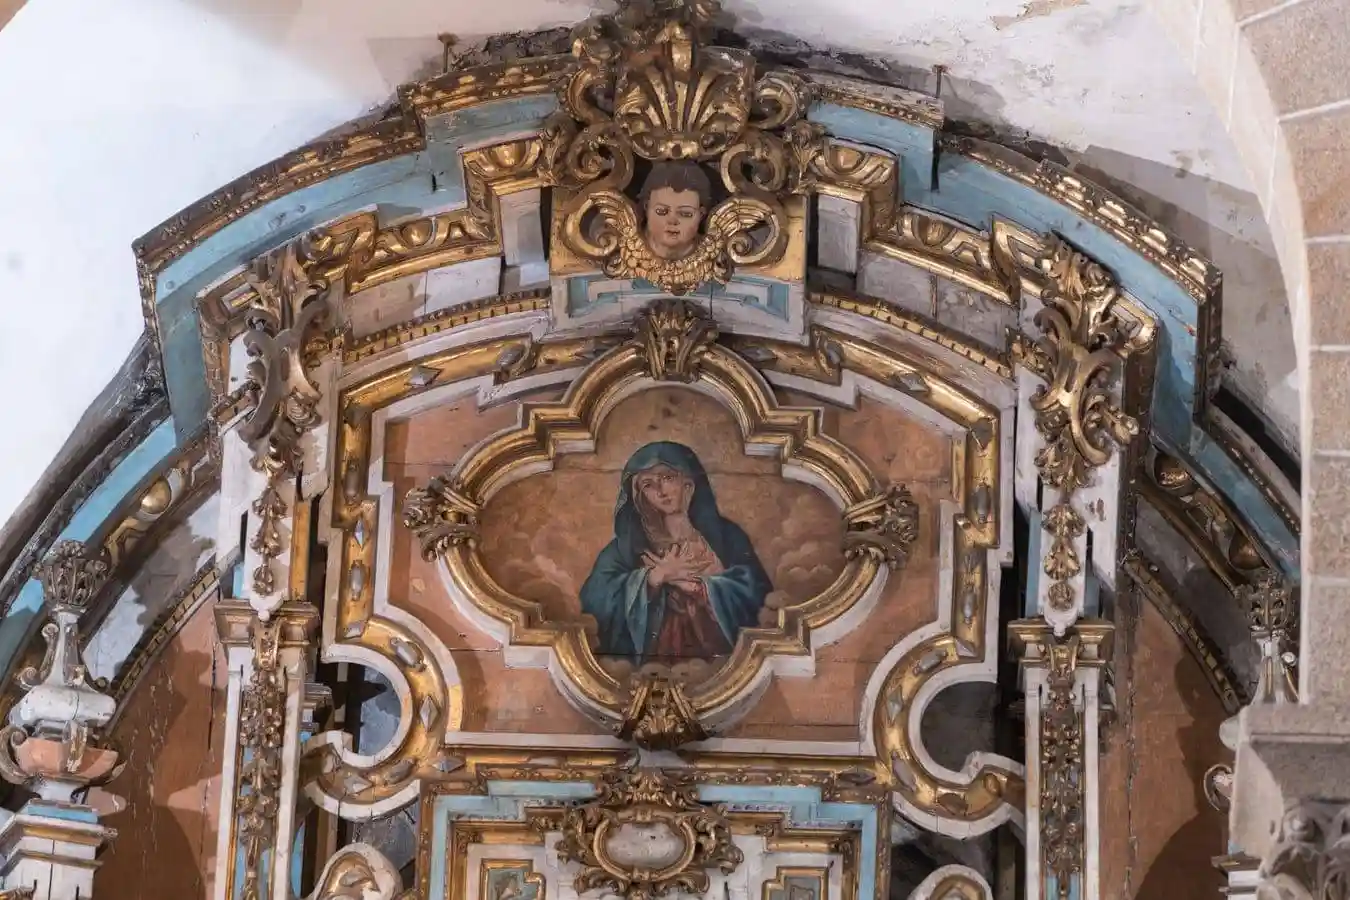 Detalle del coronamiento del retablo de la Capilla de San Antonio, con una pintura de la Dolorosa.